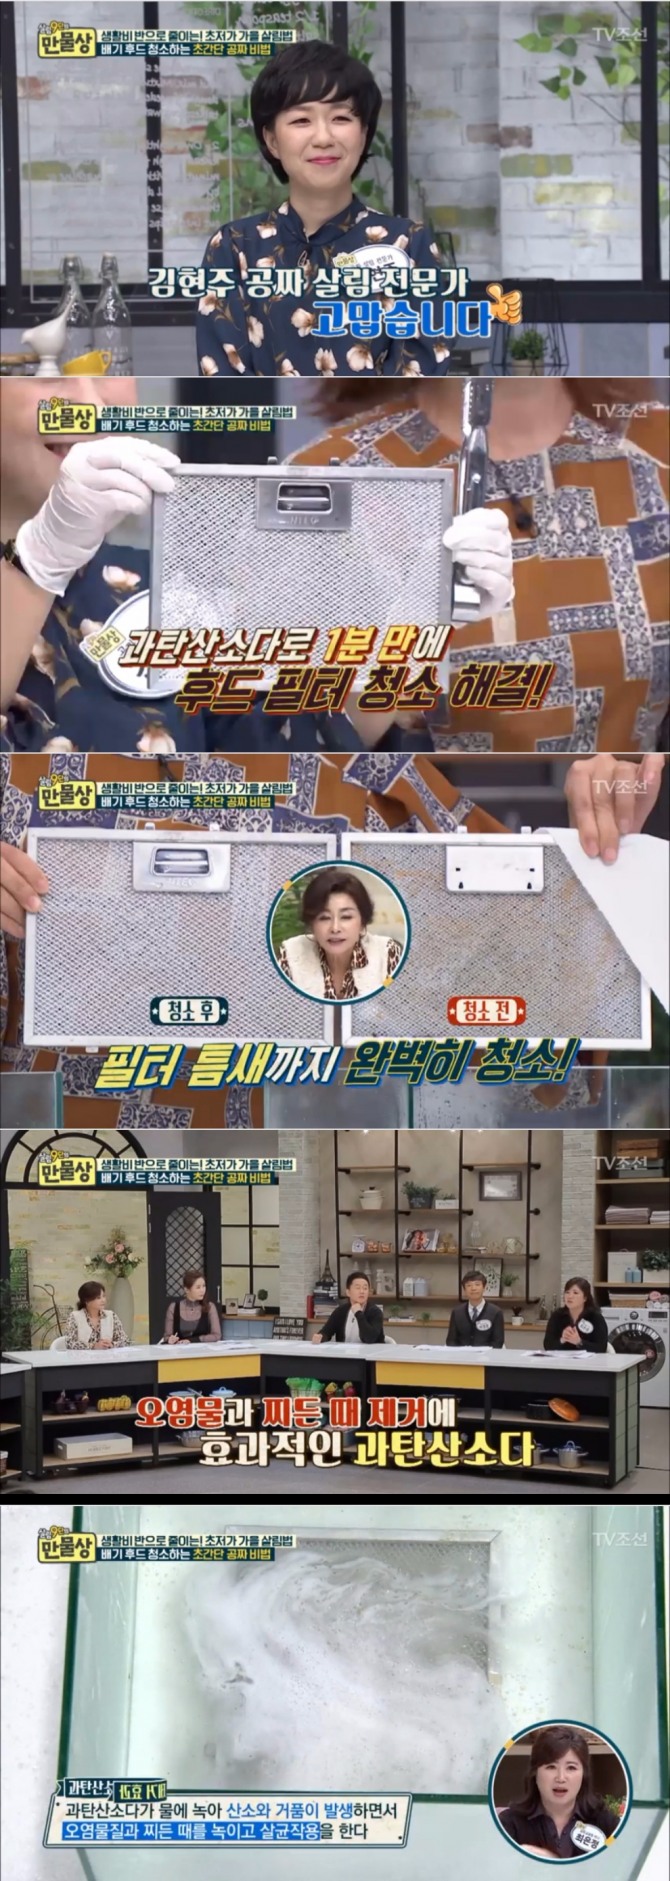 15일 밤 방송된 TV조선 '살림9단의 만물상'에서는 김현주씨가 출연, 헤어드라이기를 이용한 후드 청소비법과 과탄산소다를 사용해 후드필터를 깨끗하게 세척하는 방법을 공개했다. 사진=TV 조선 방송 캡처